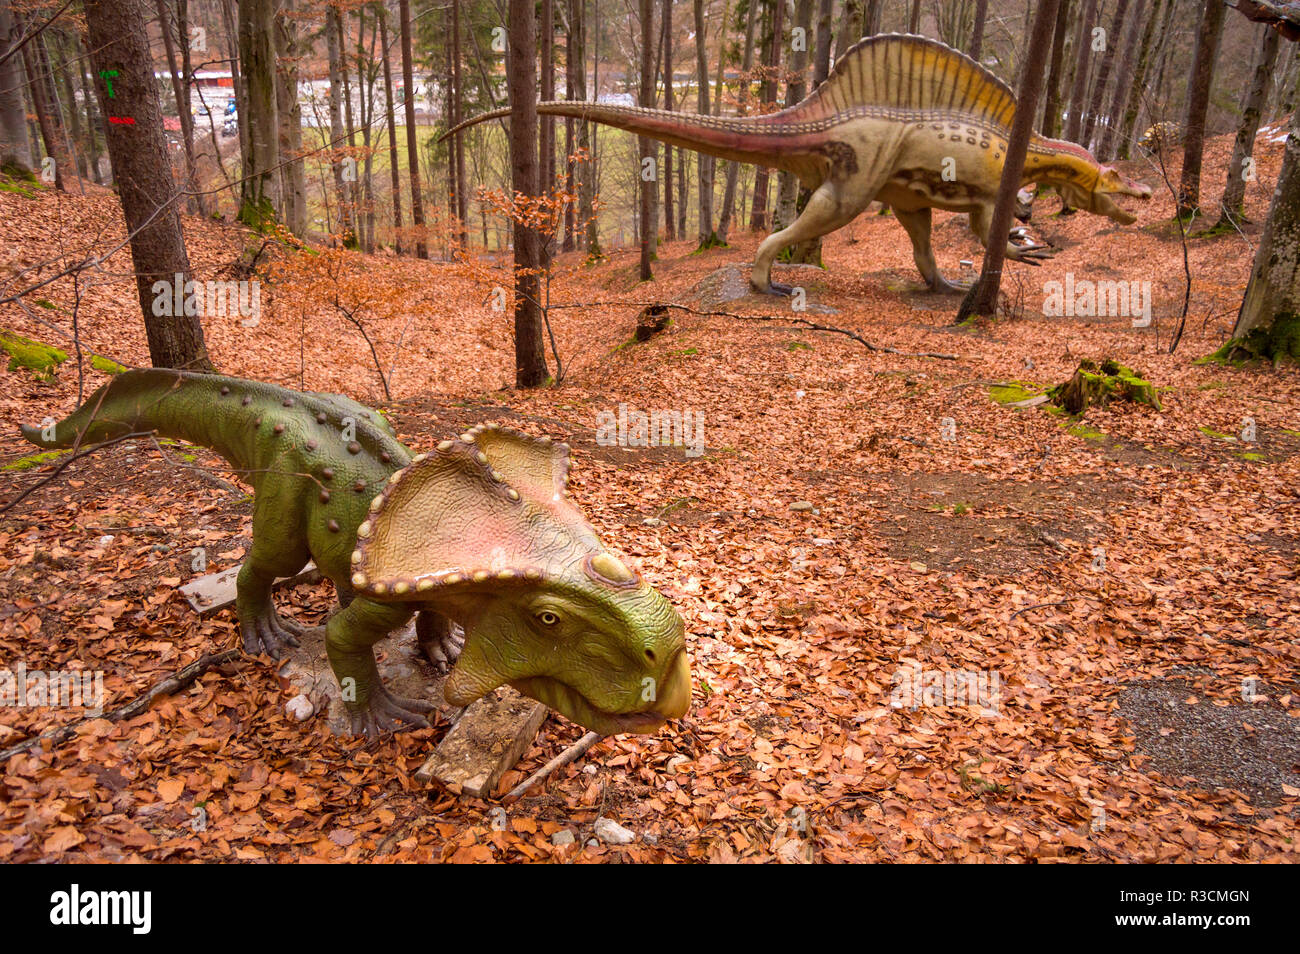 Rasnov, Rumänien - 4. Dezember 2017: Zwei verschiedene Dinosaurier Modelle bei Dino Park Rosenau, die nur Dinosaurier Theme Park in Rumänien und der größte seiner k Stockfoto